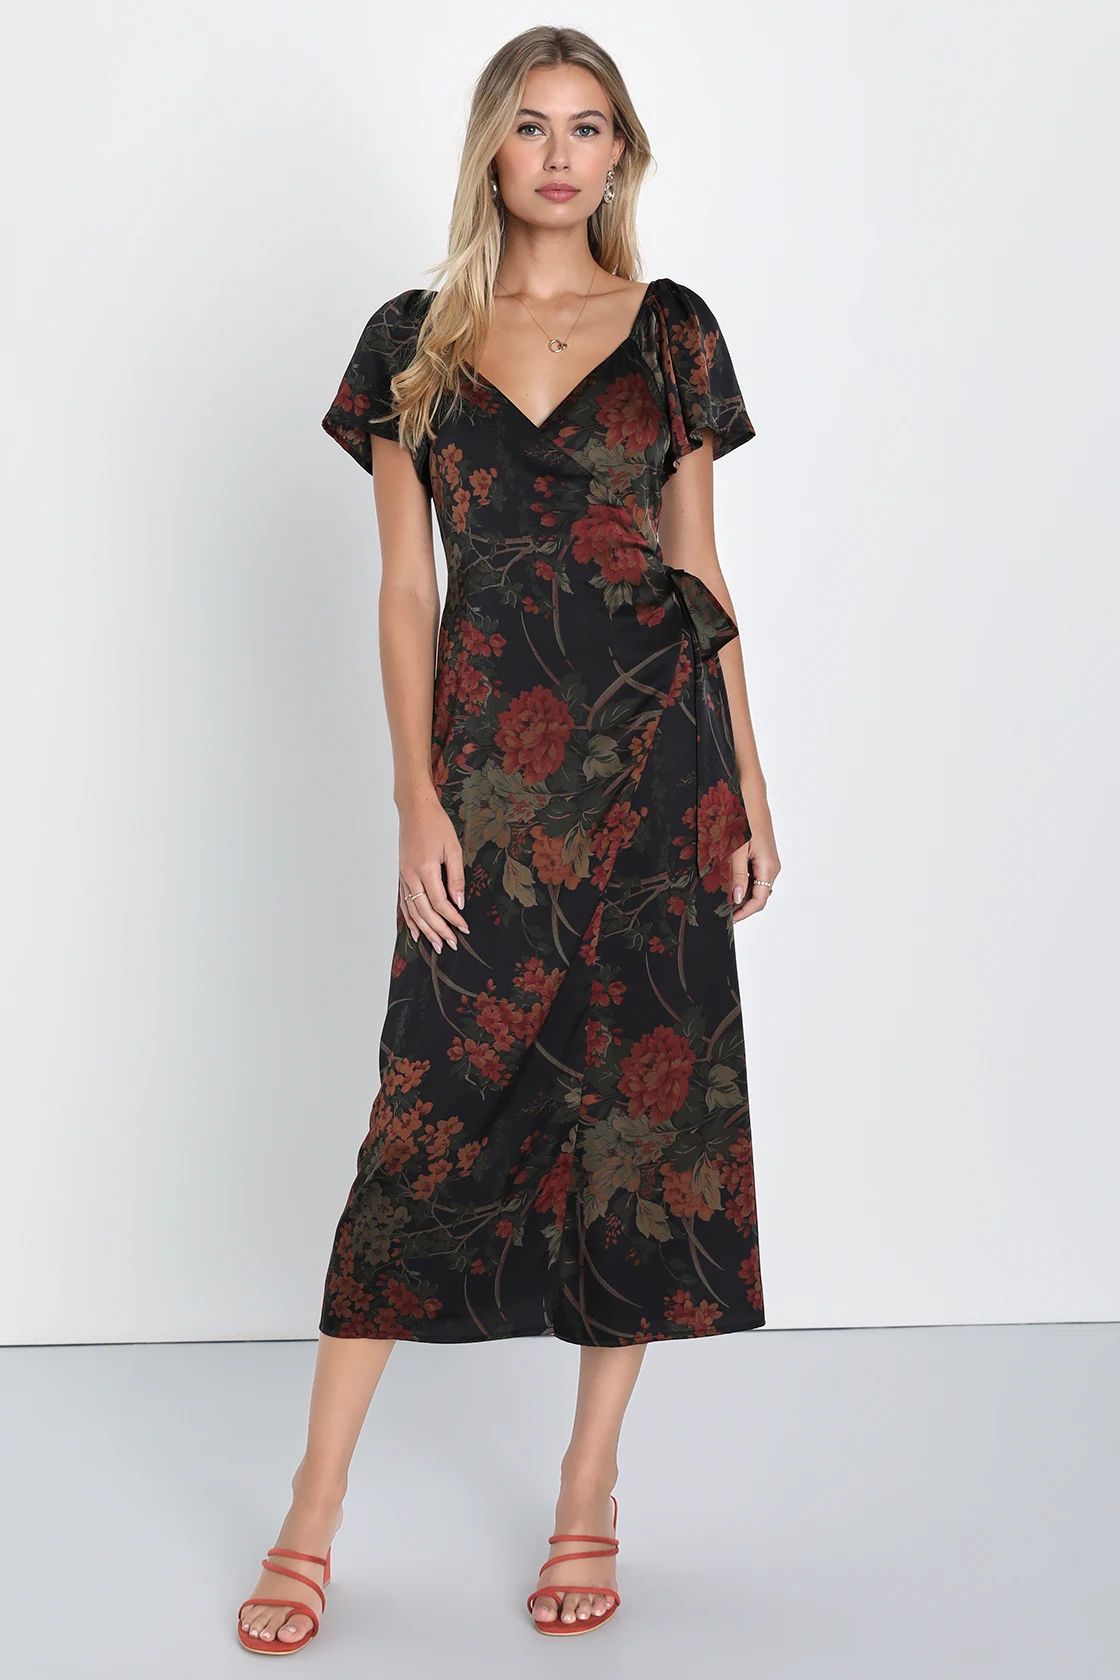 Subtle Elegance Black Floral Print Faux Wrap Midi Dress | Lulus (US)